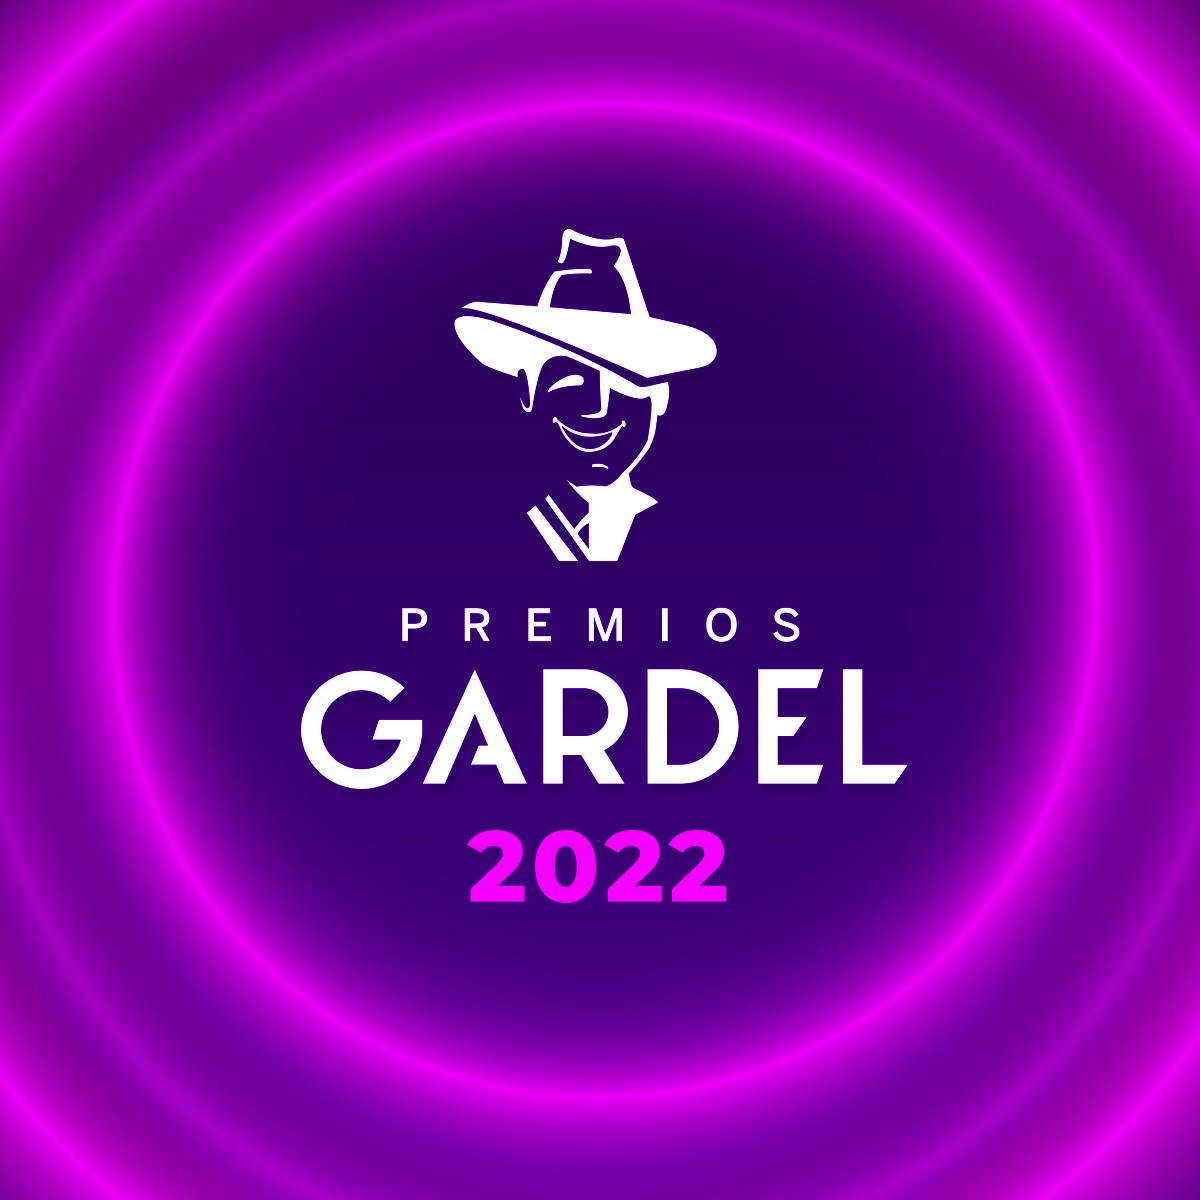 Los Premios Gardel 2022 se llevaran acabo en el Movistar Arena